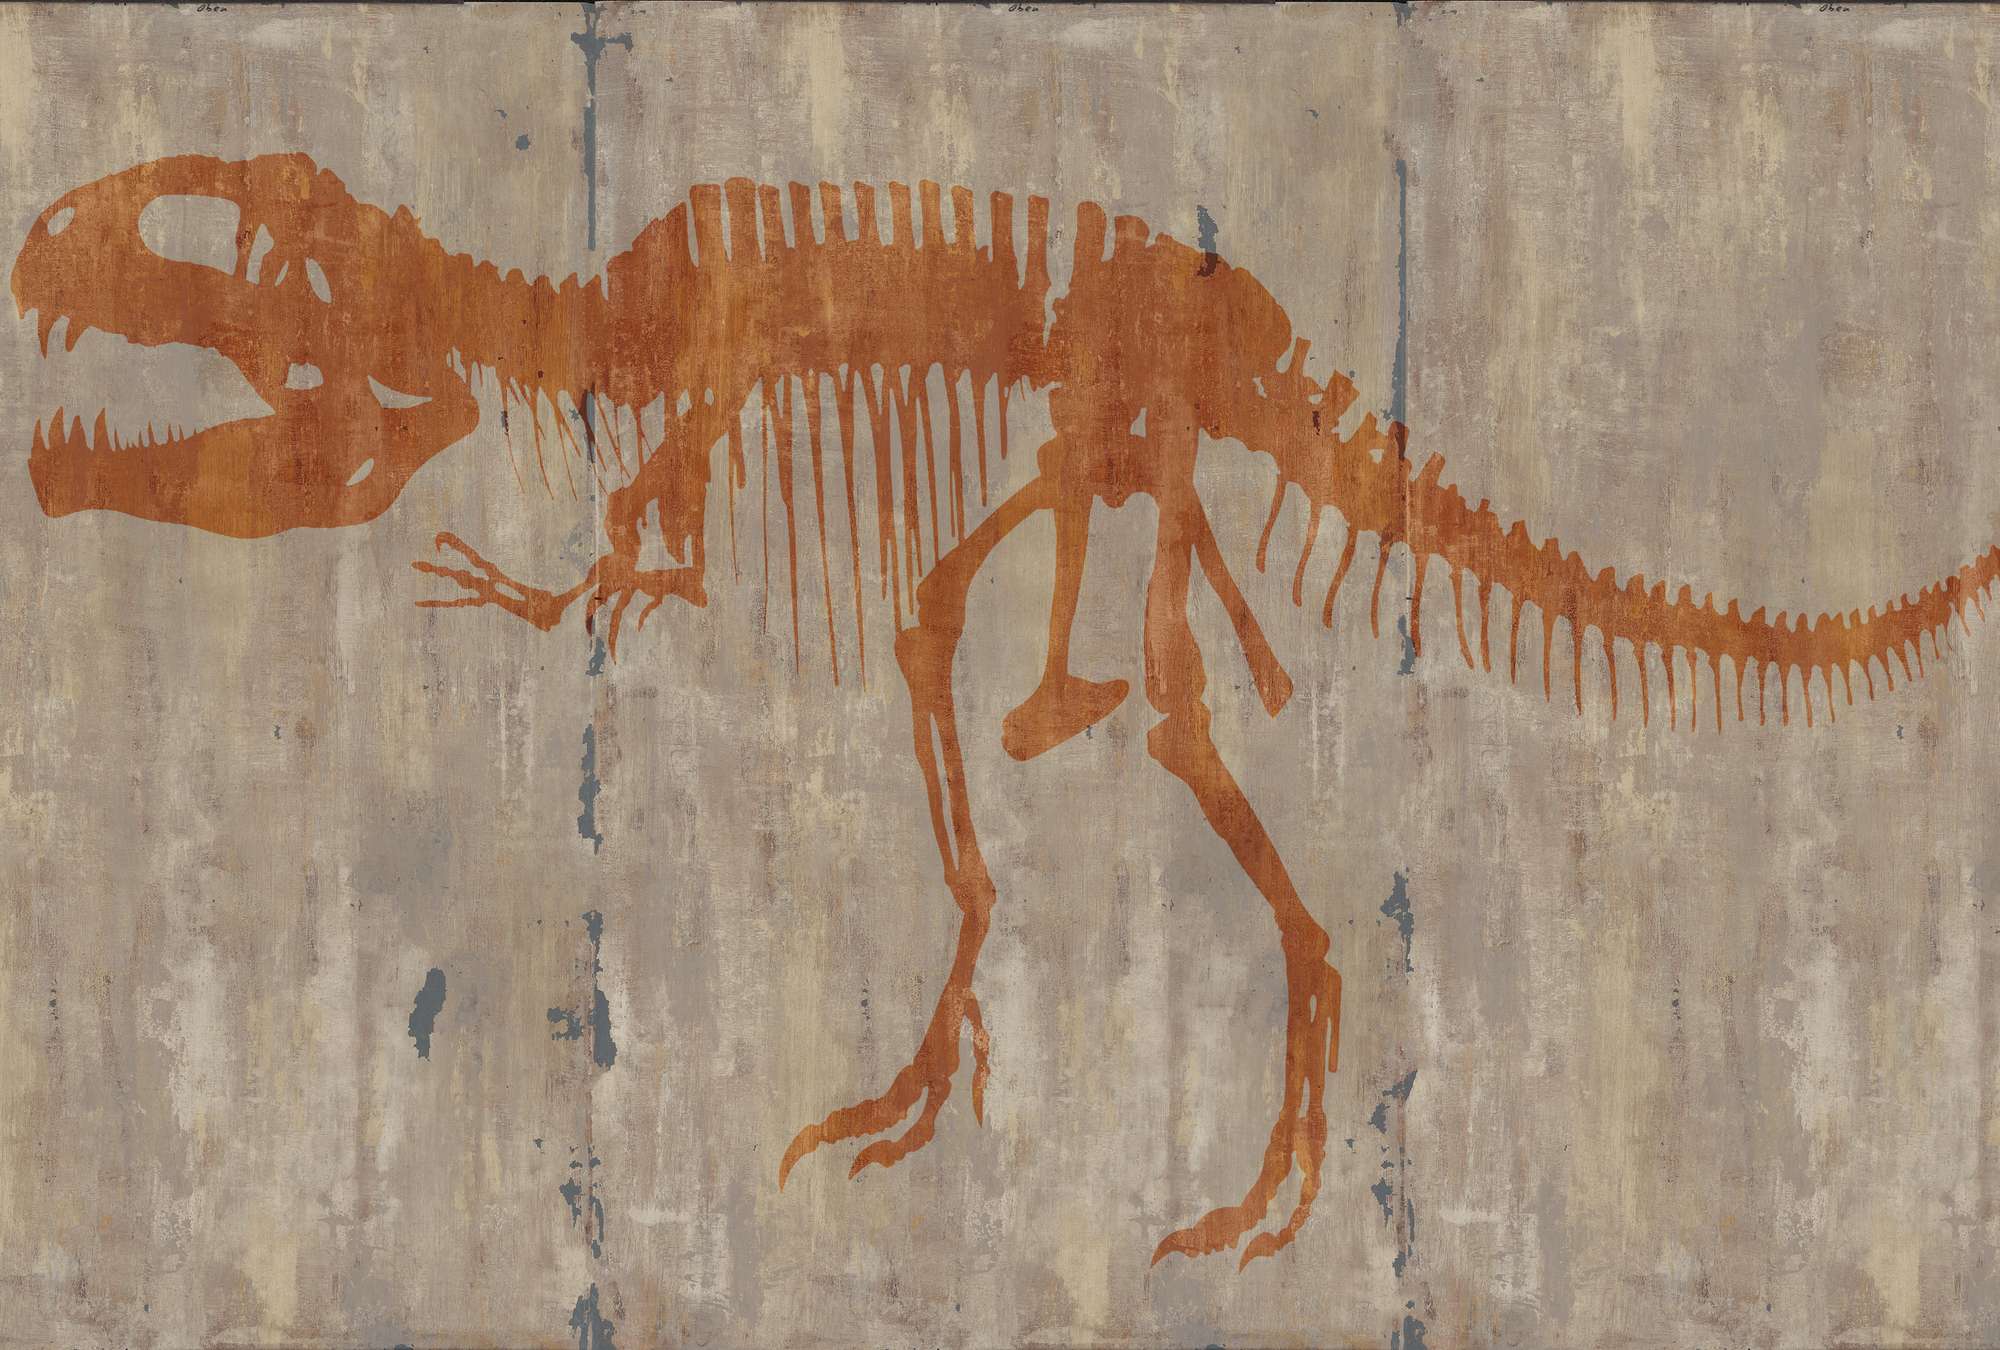             Grotschildering van een T-Rex muurschildering
        